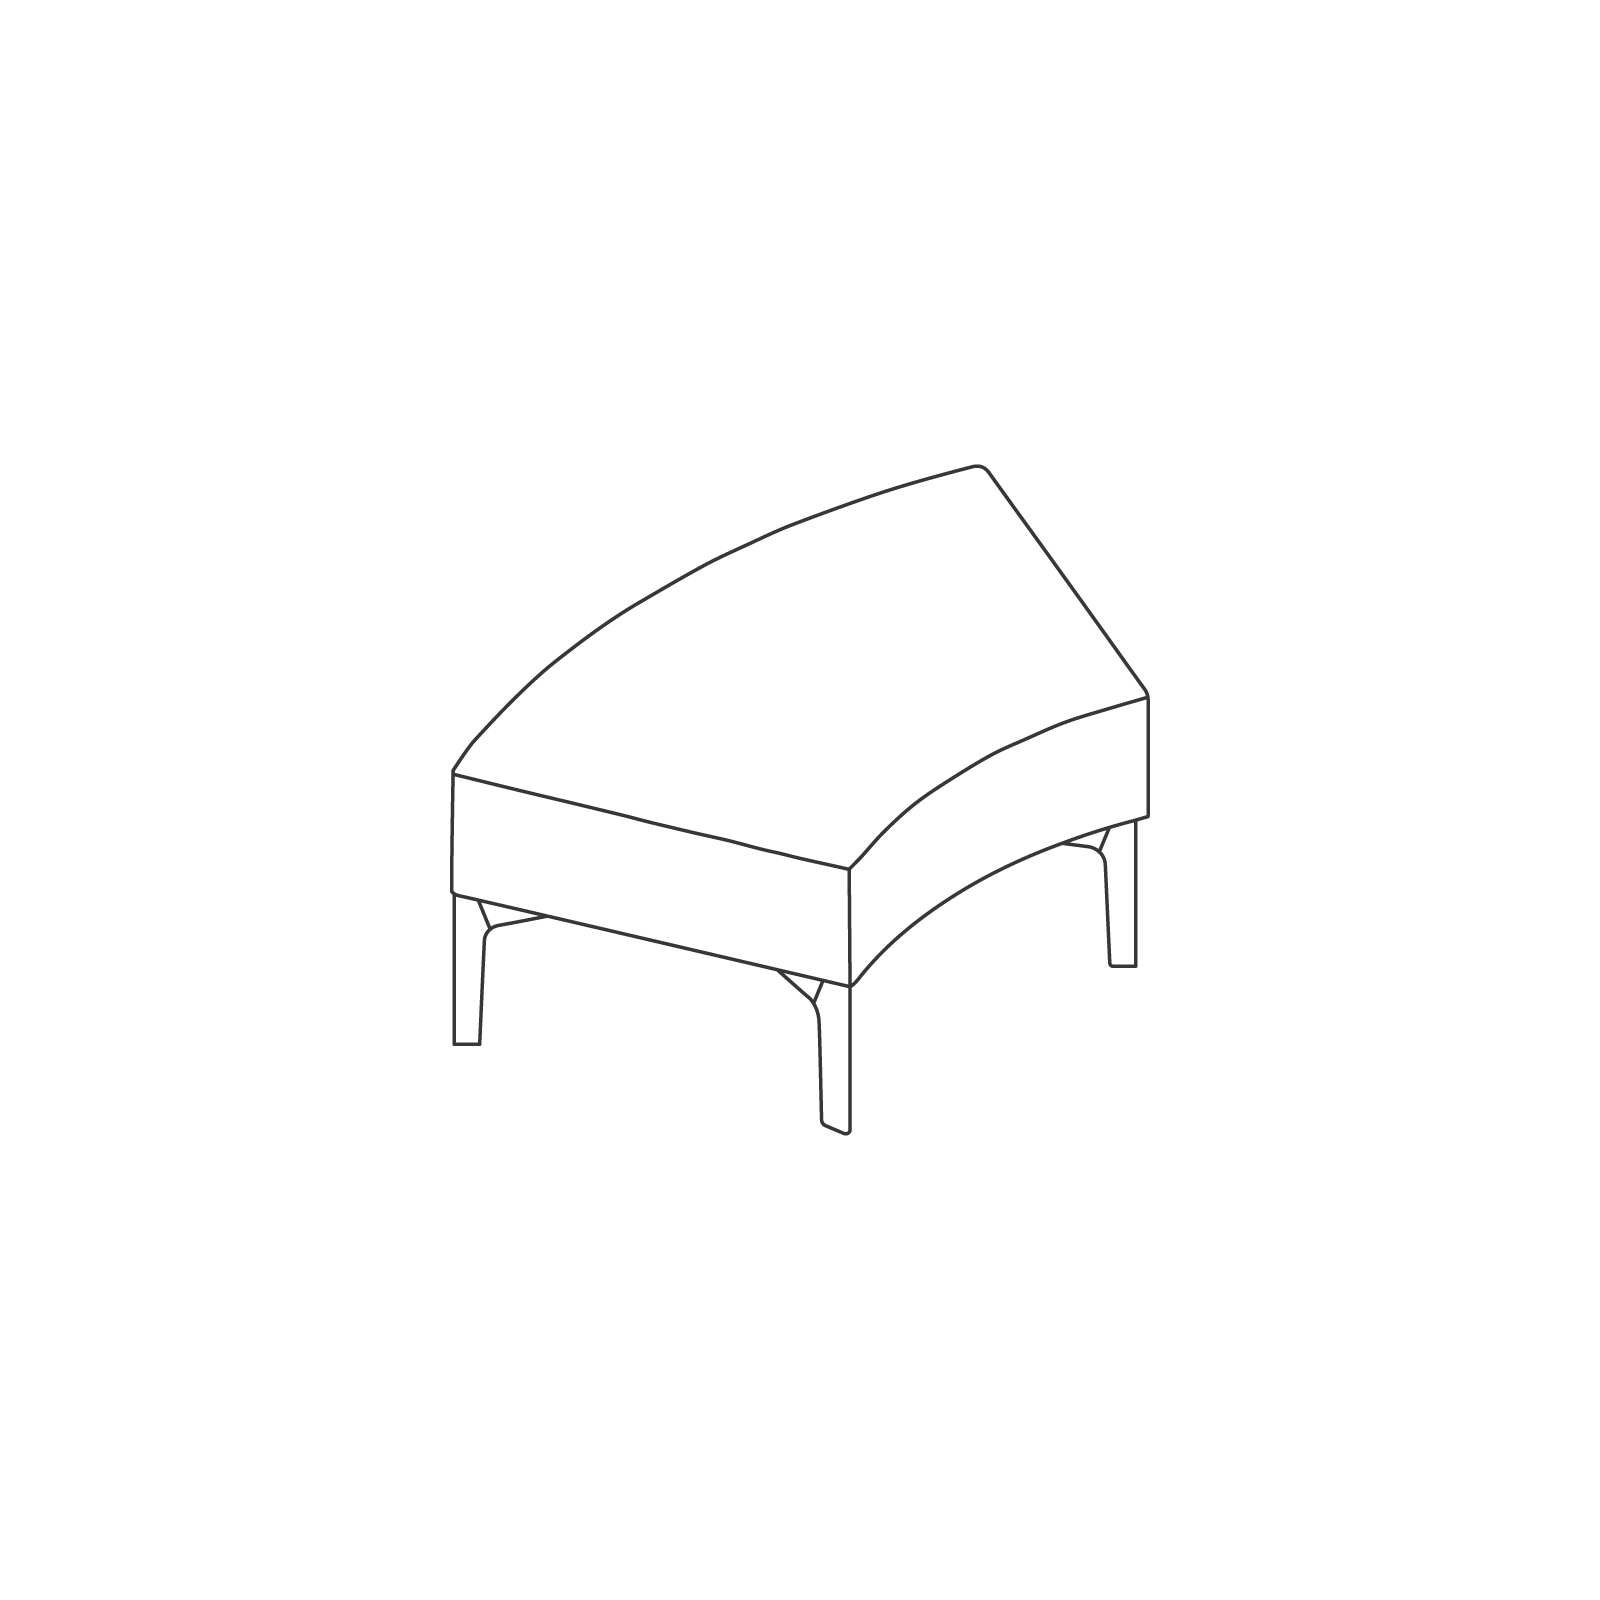 Un dibujo - Sillería modular Symbol – Banca – Curva de 45 grados